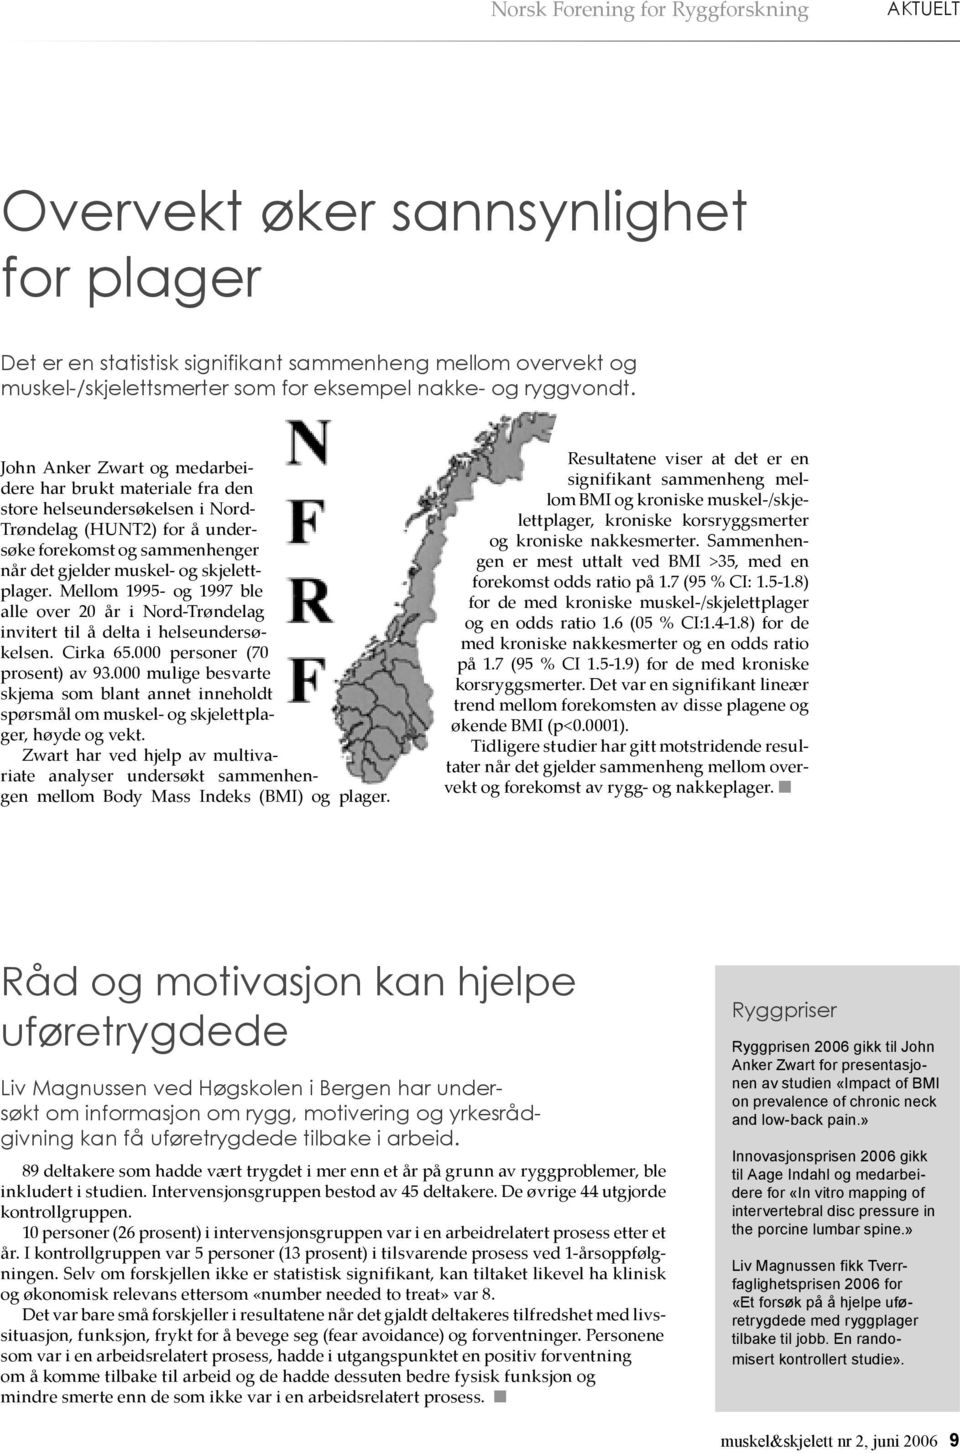 John Anker Zwart og medarbeidere har brukt materiale fra den store helseundersøkelsen i Nord- Trøndelag (HUNT2) for å undersøke forekomst og sammenhenger når det gjelder muskel- og skjelettplager.